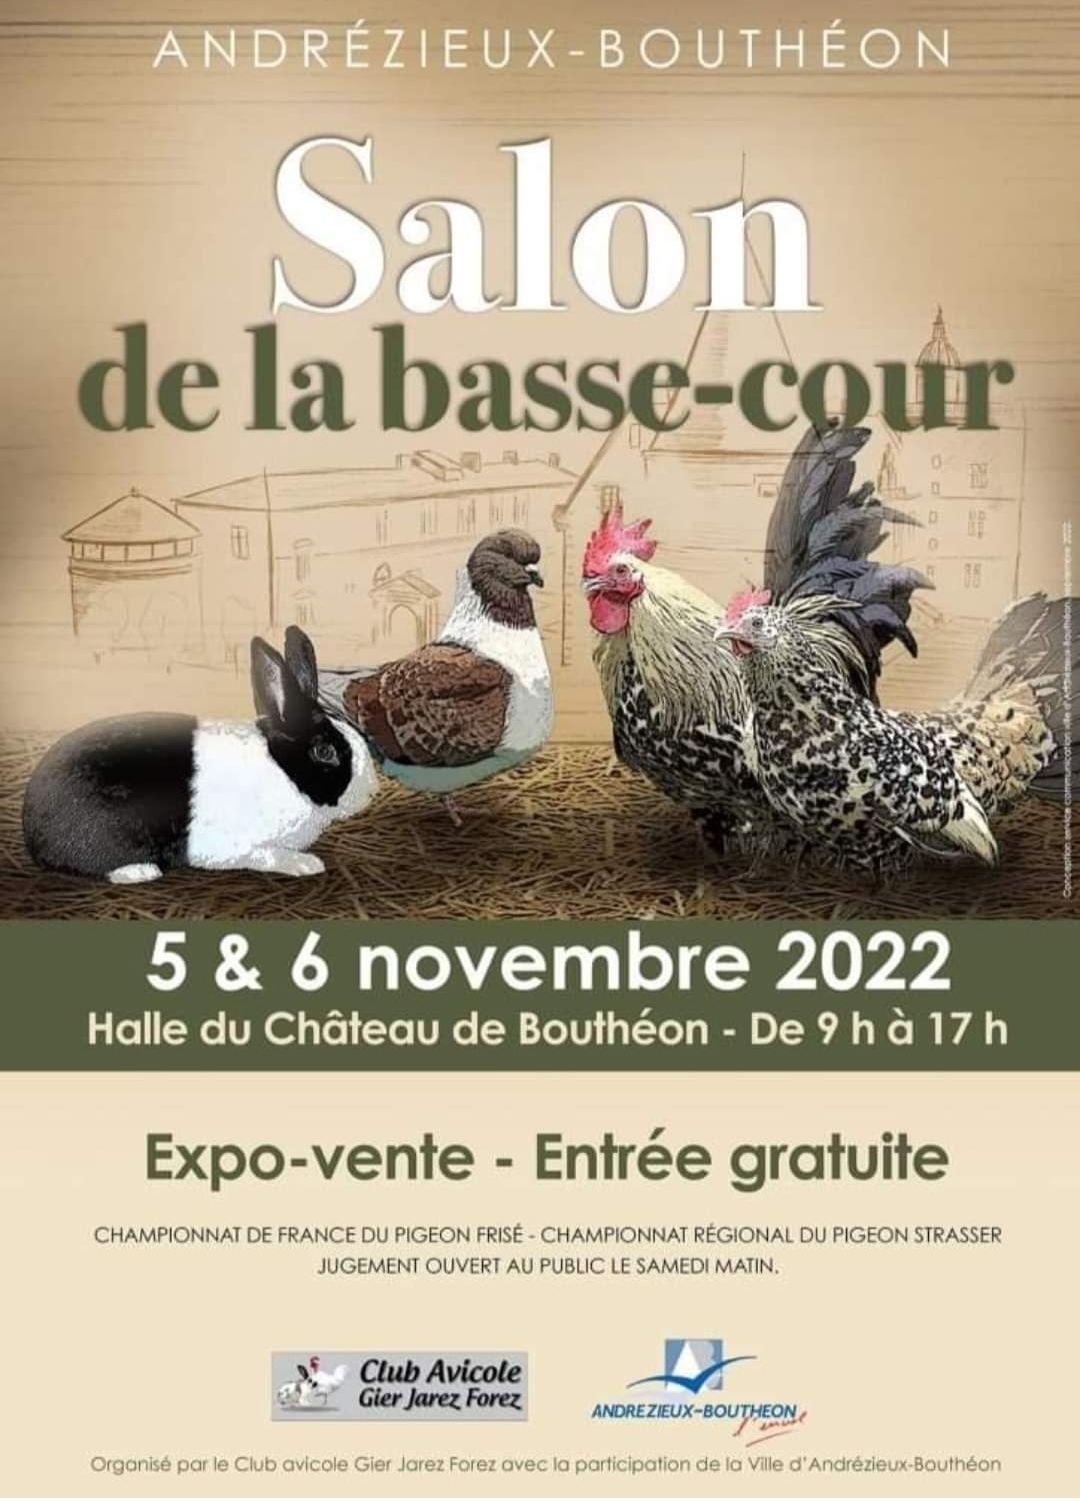 Convoyage pour Andrezieux Bouthéon les 5 et 6 novembre 2022